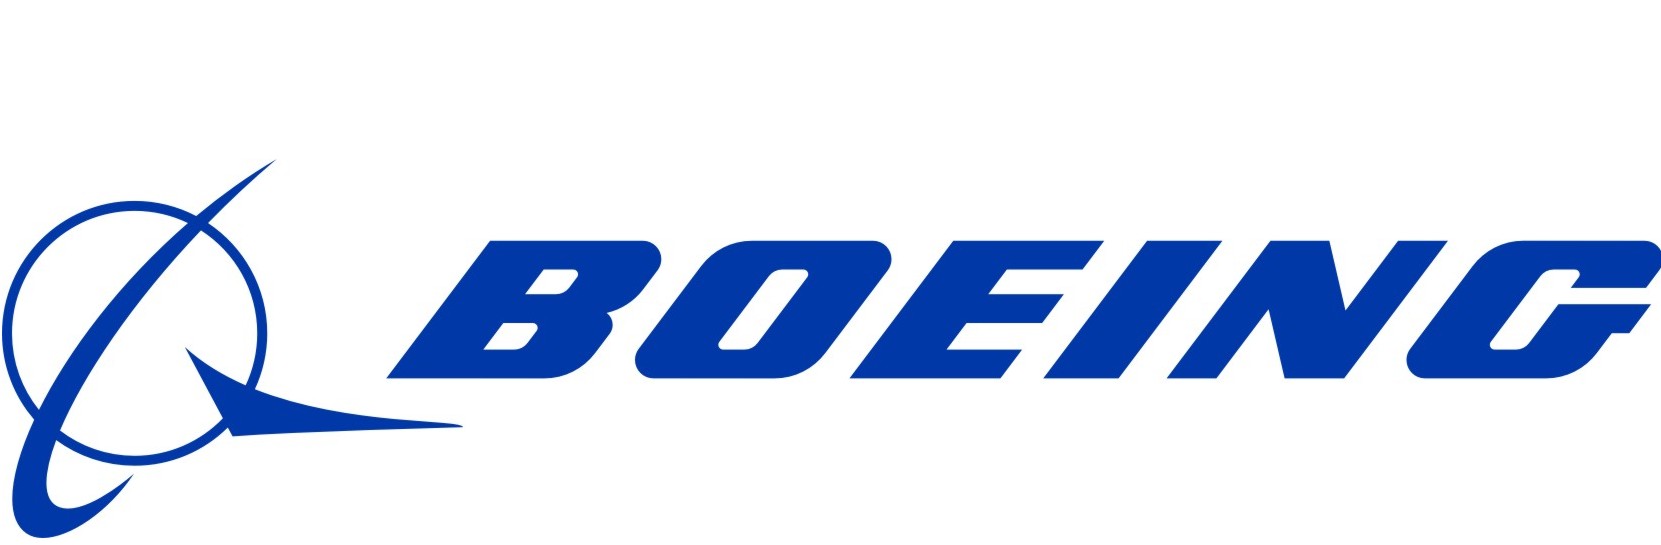 Acheter l’action Boeing en ligne : analyse des cotations et prix